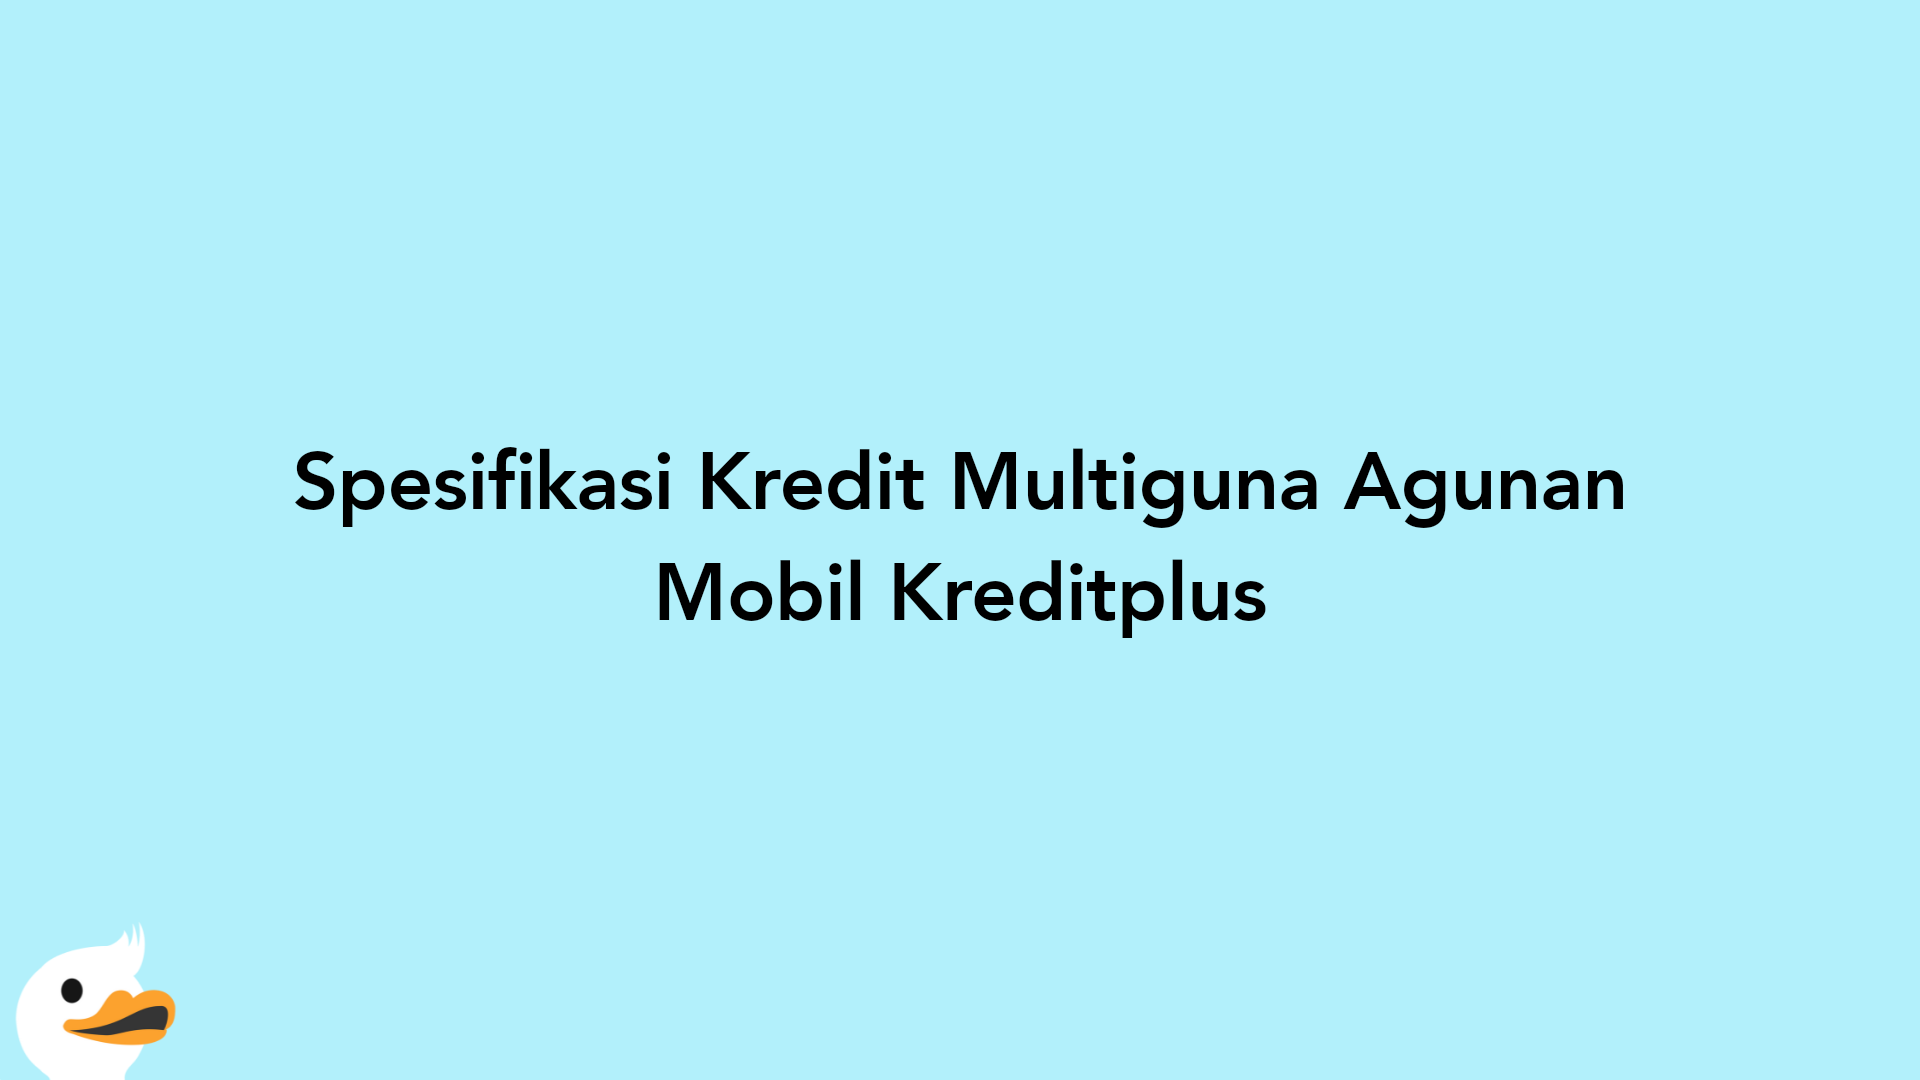 Spesifikasi Kredit Multiguna Agunan Mobil Kreditplus